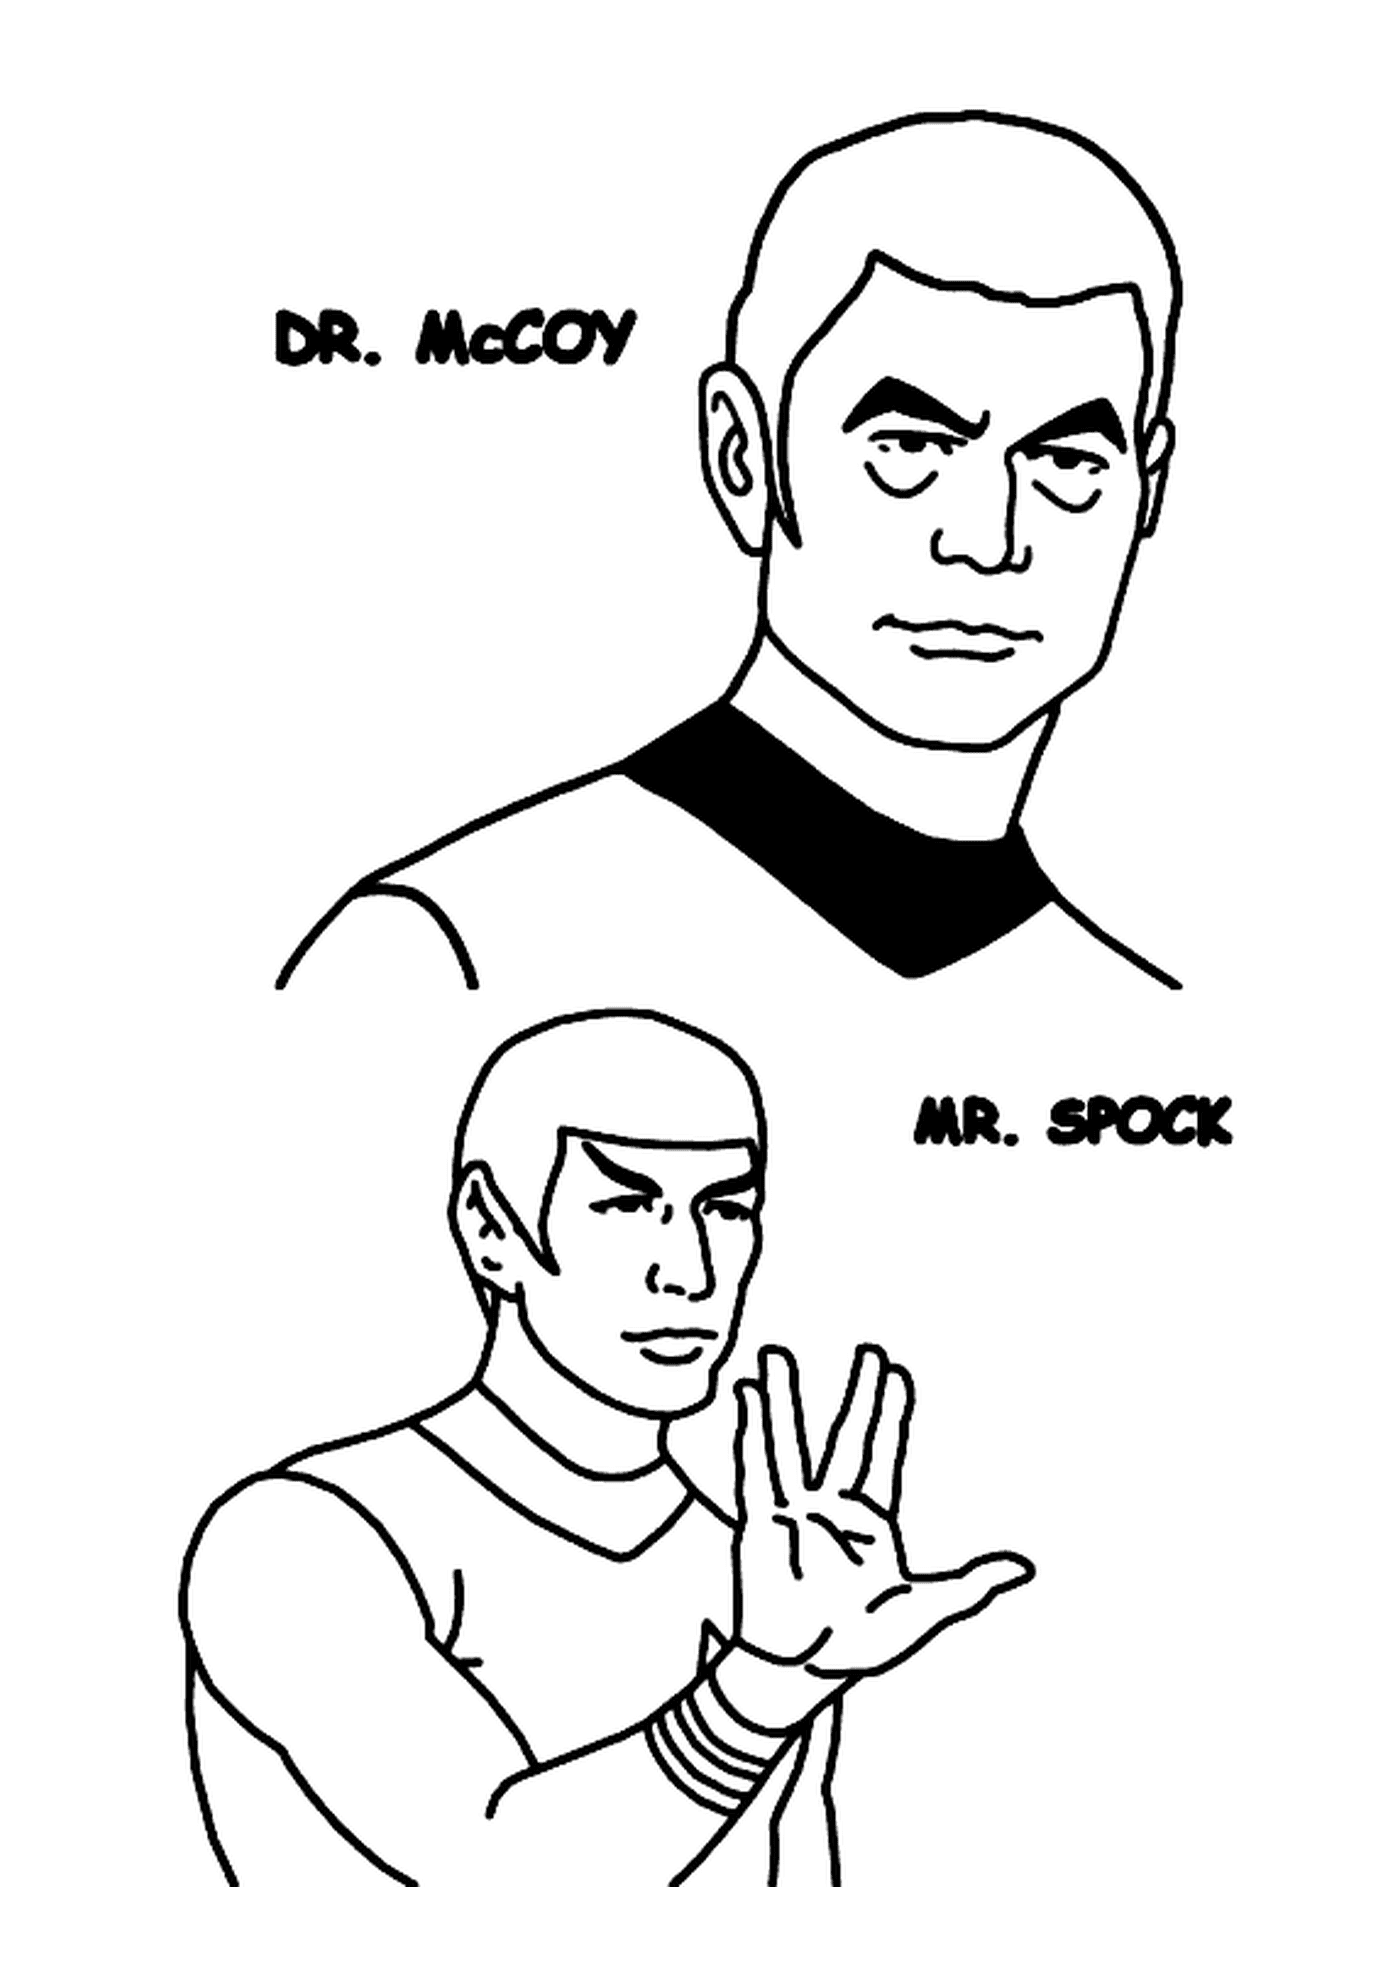  Dr McCoy and Mr Spock de Star Trek 